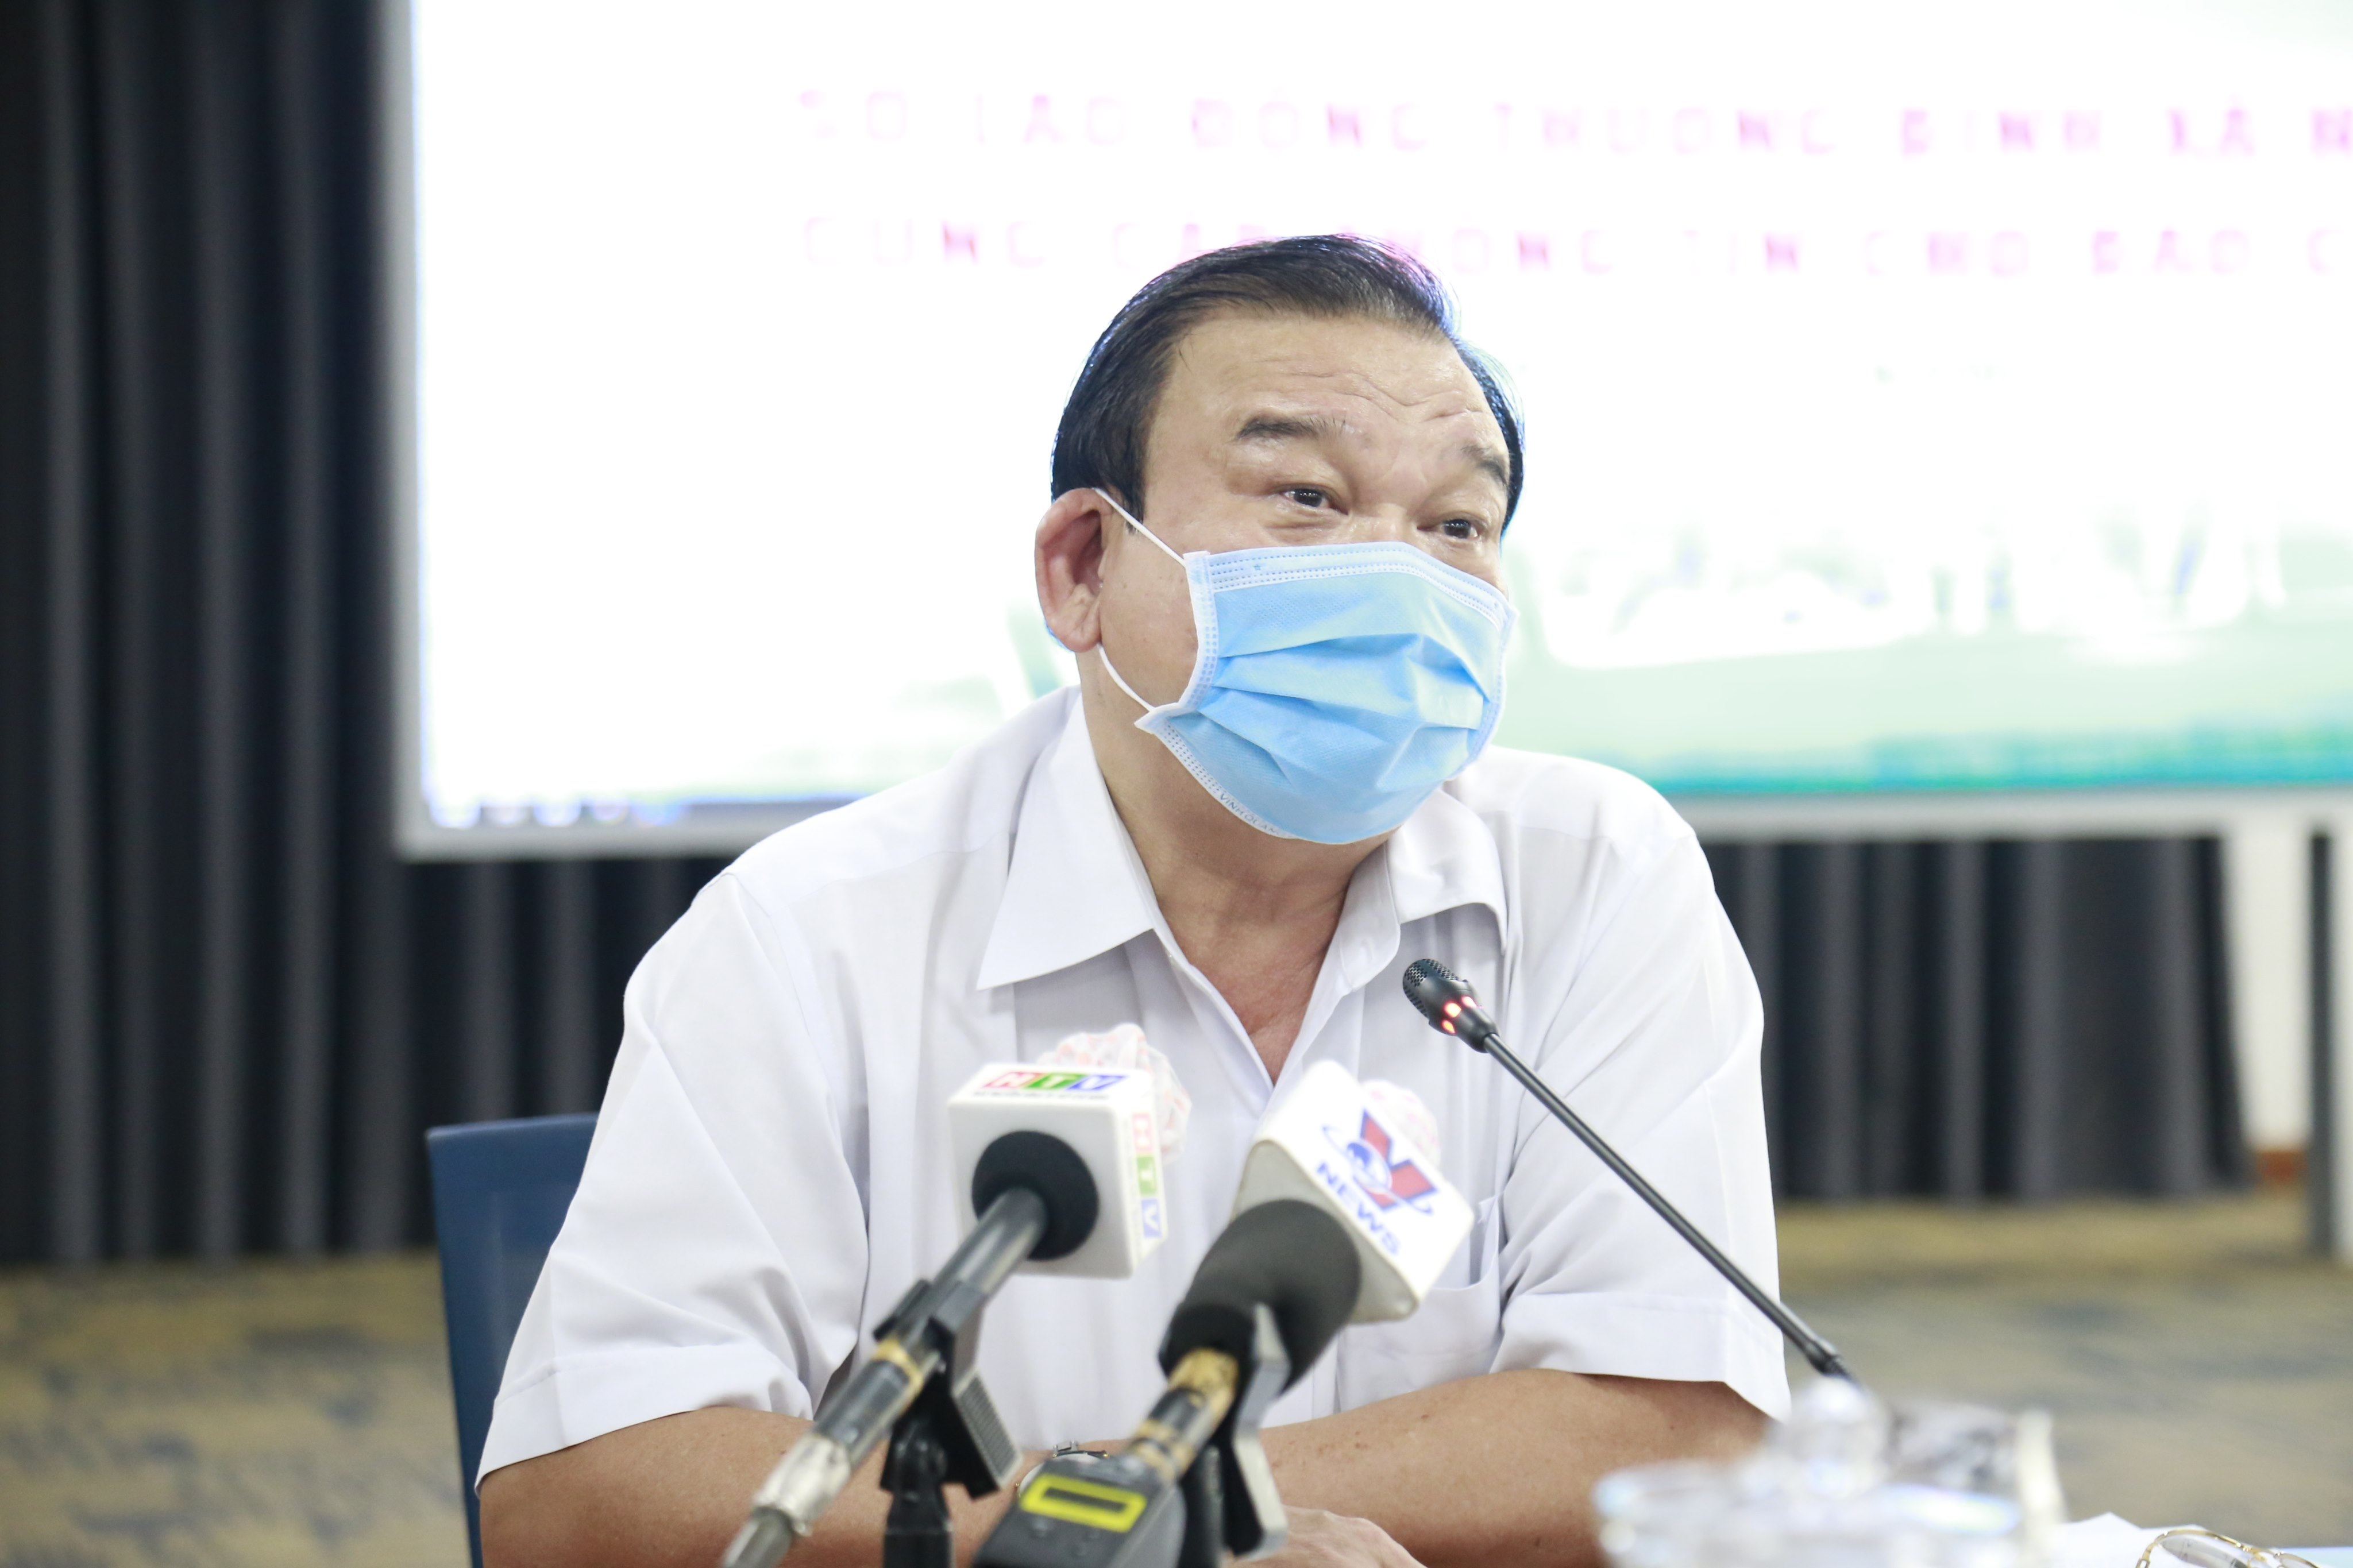 UBND TPHCM kết luận về những nội dung tố cáo ông Lê Minh Tấn - 1